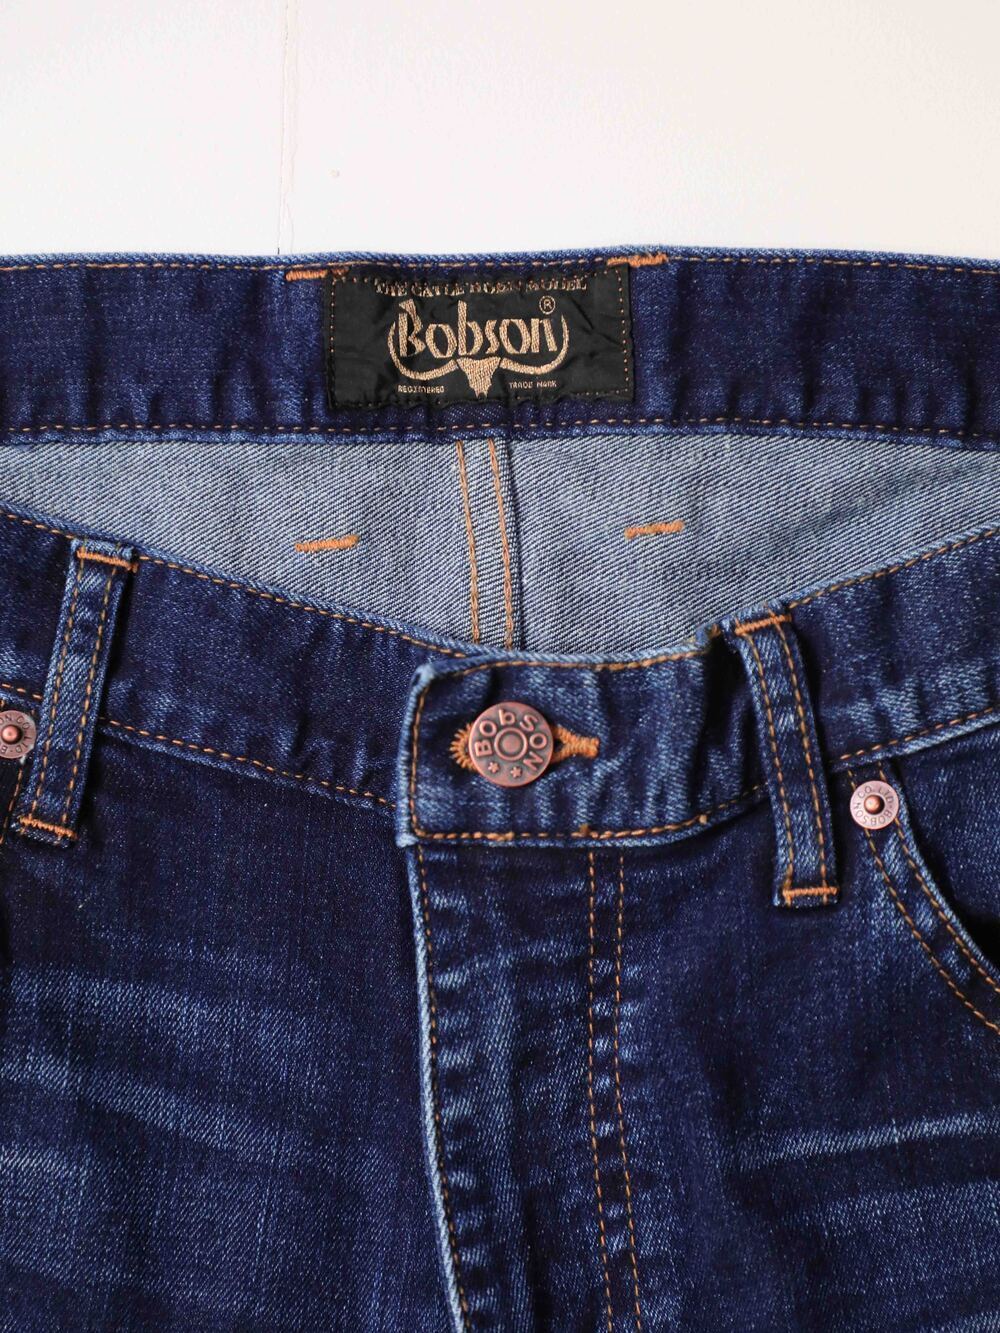 シューカットジーンズ インディゴブルーカラー Bobson Jeans